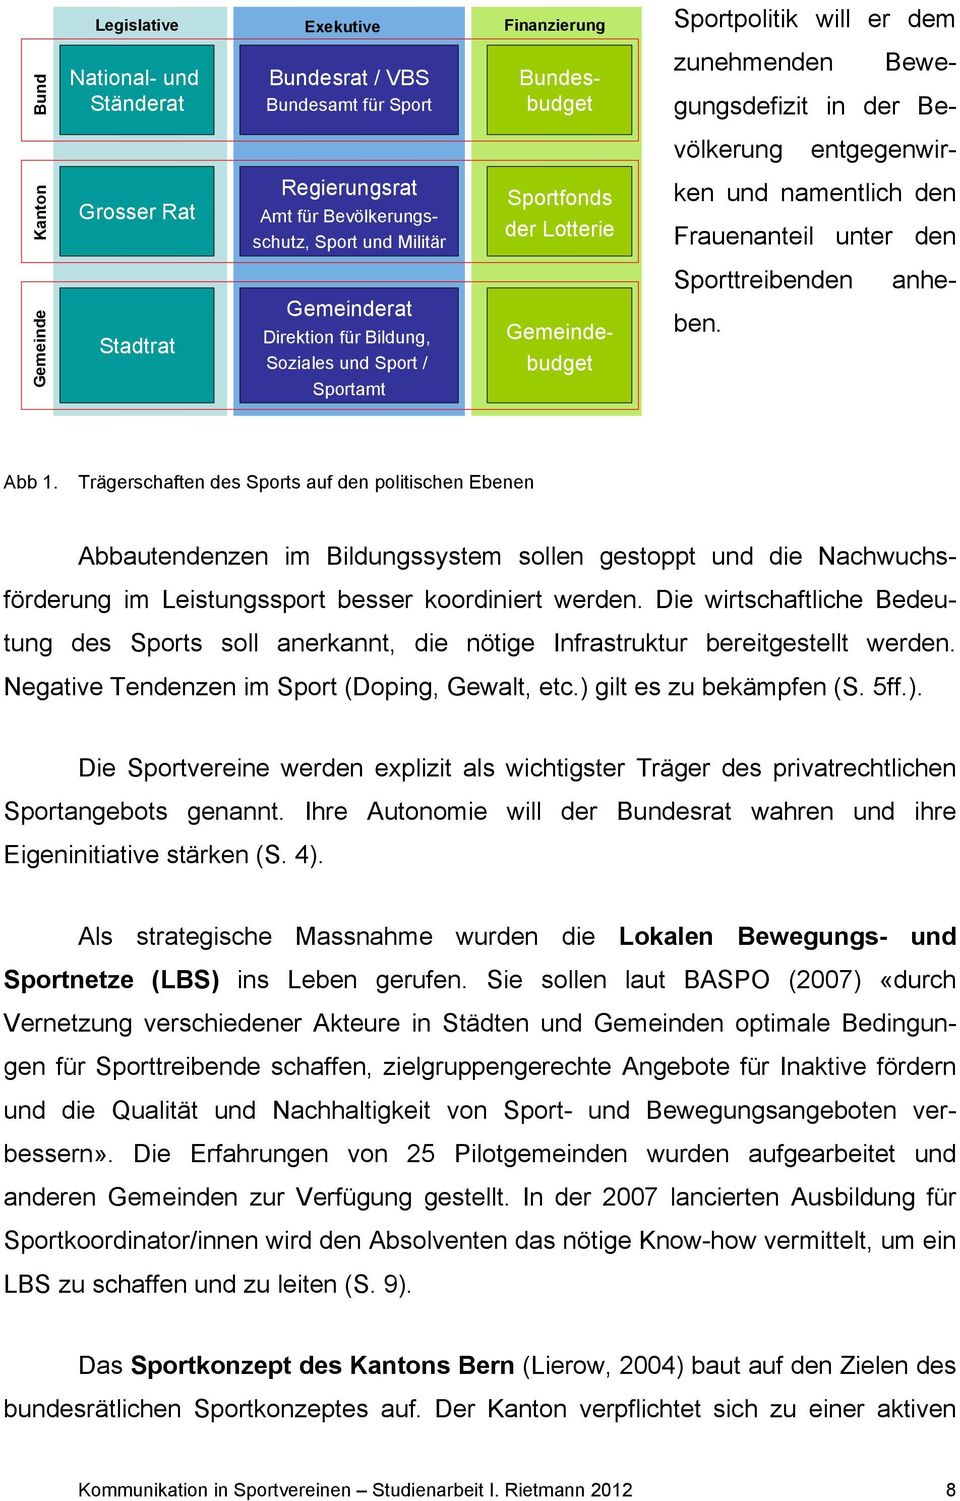 Bildung, Soziales und Sport / Sportamt Gemeindebudget anhe- Sporttreibenden ben. Abb 1.